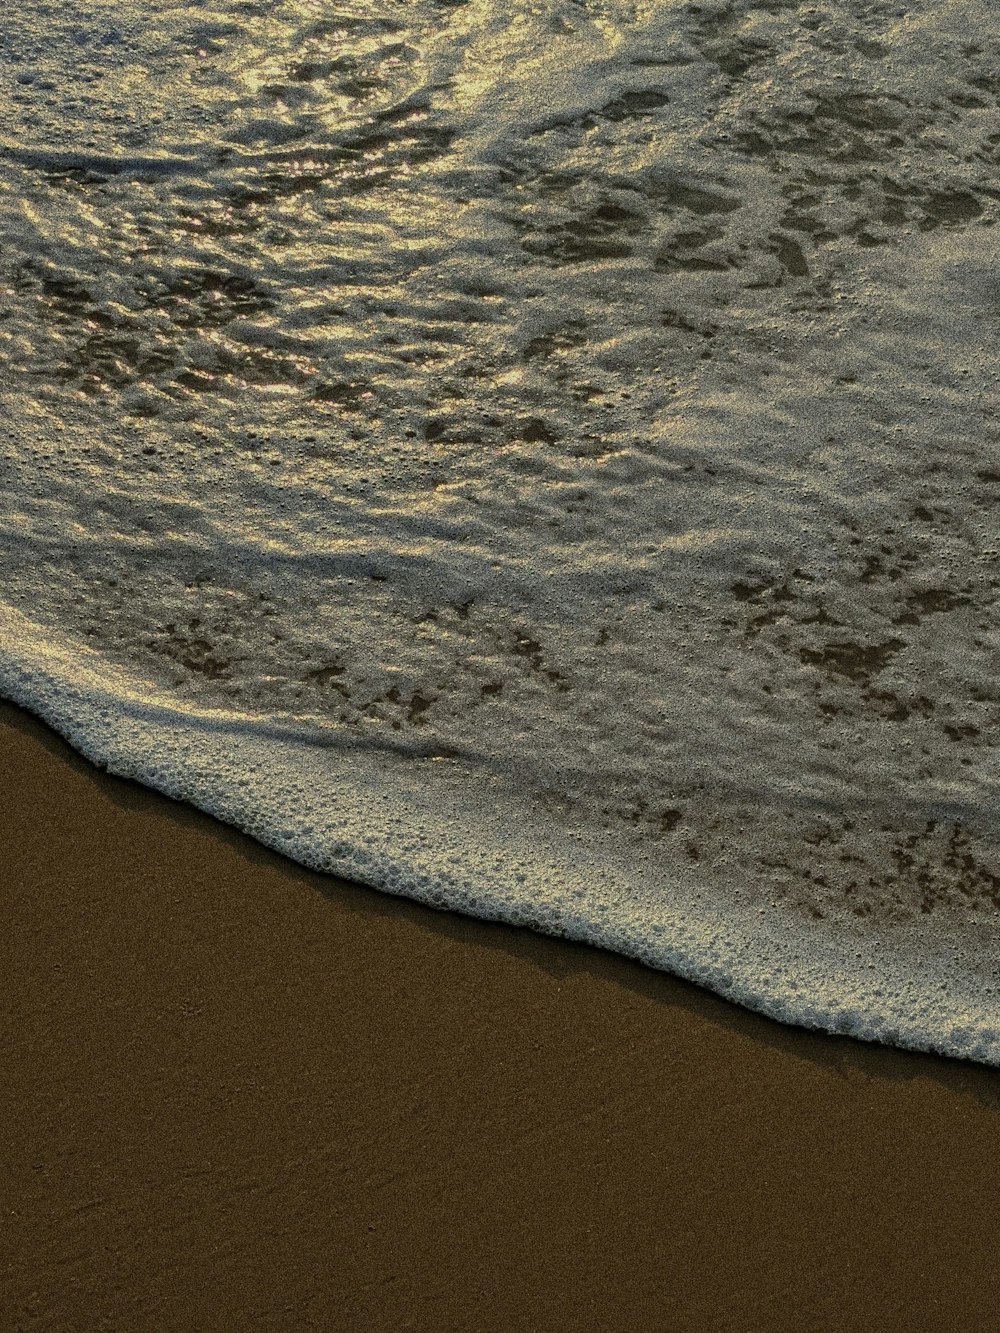 a sandy beach with waves